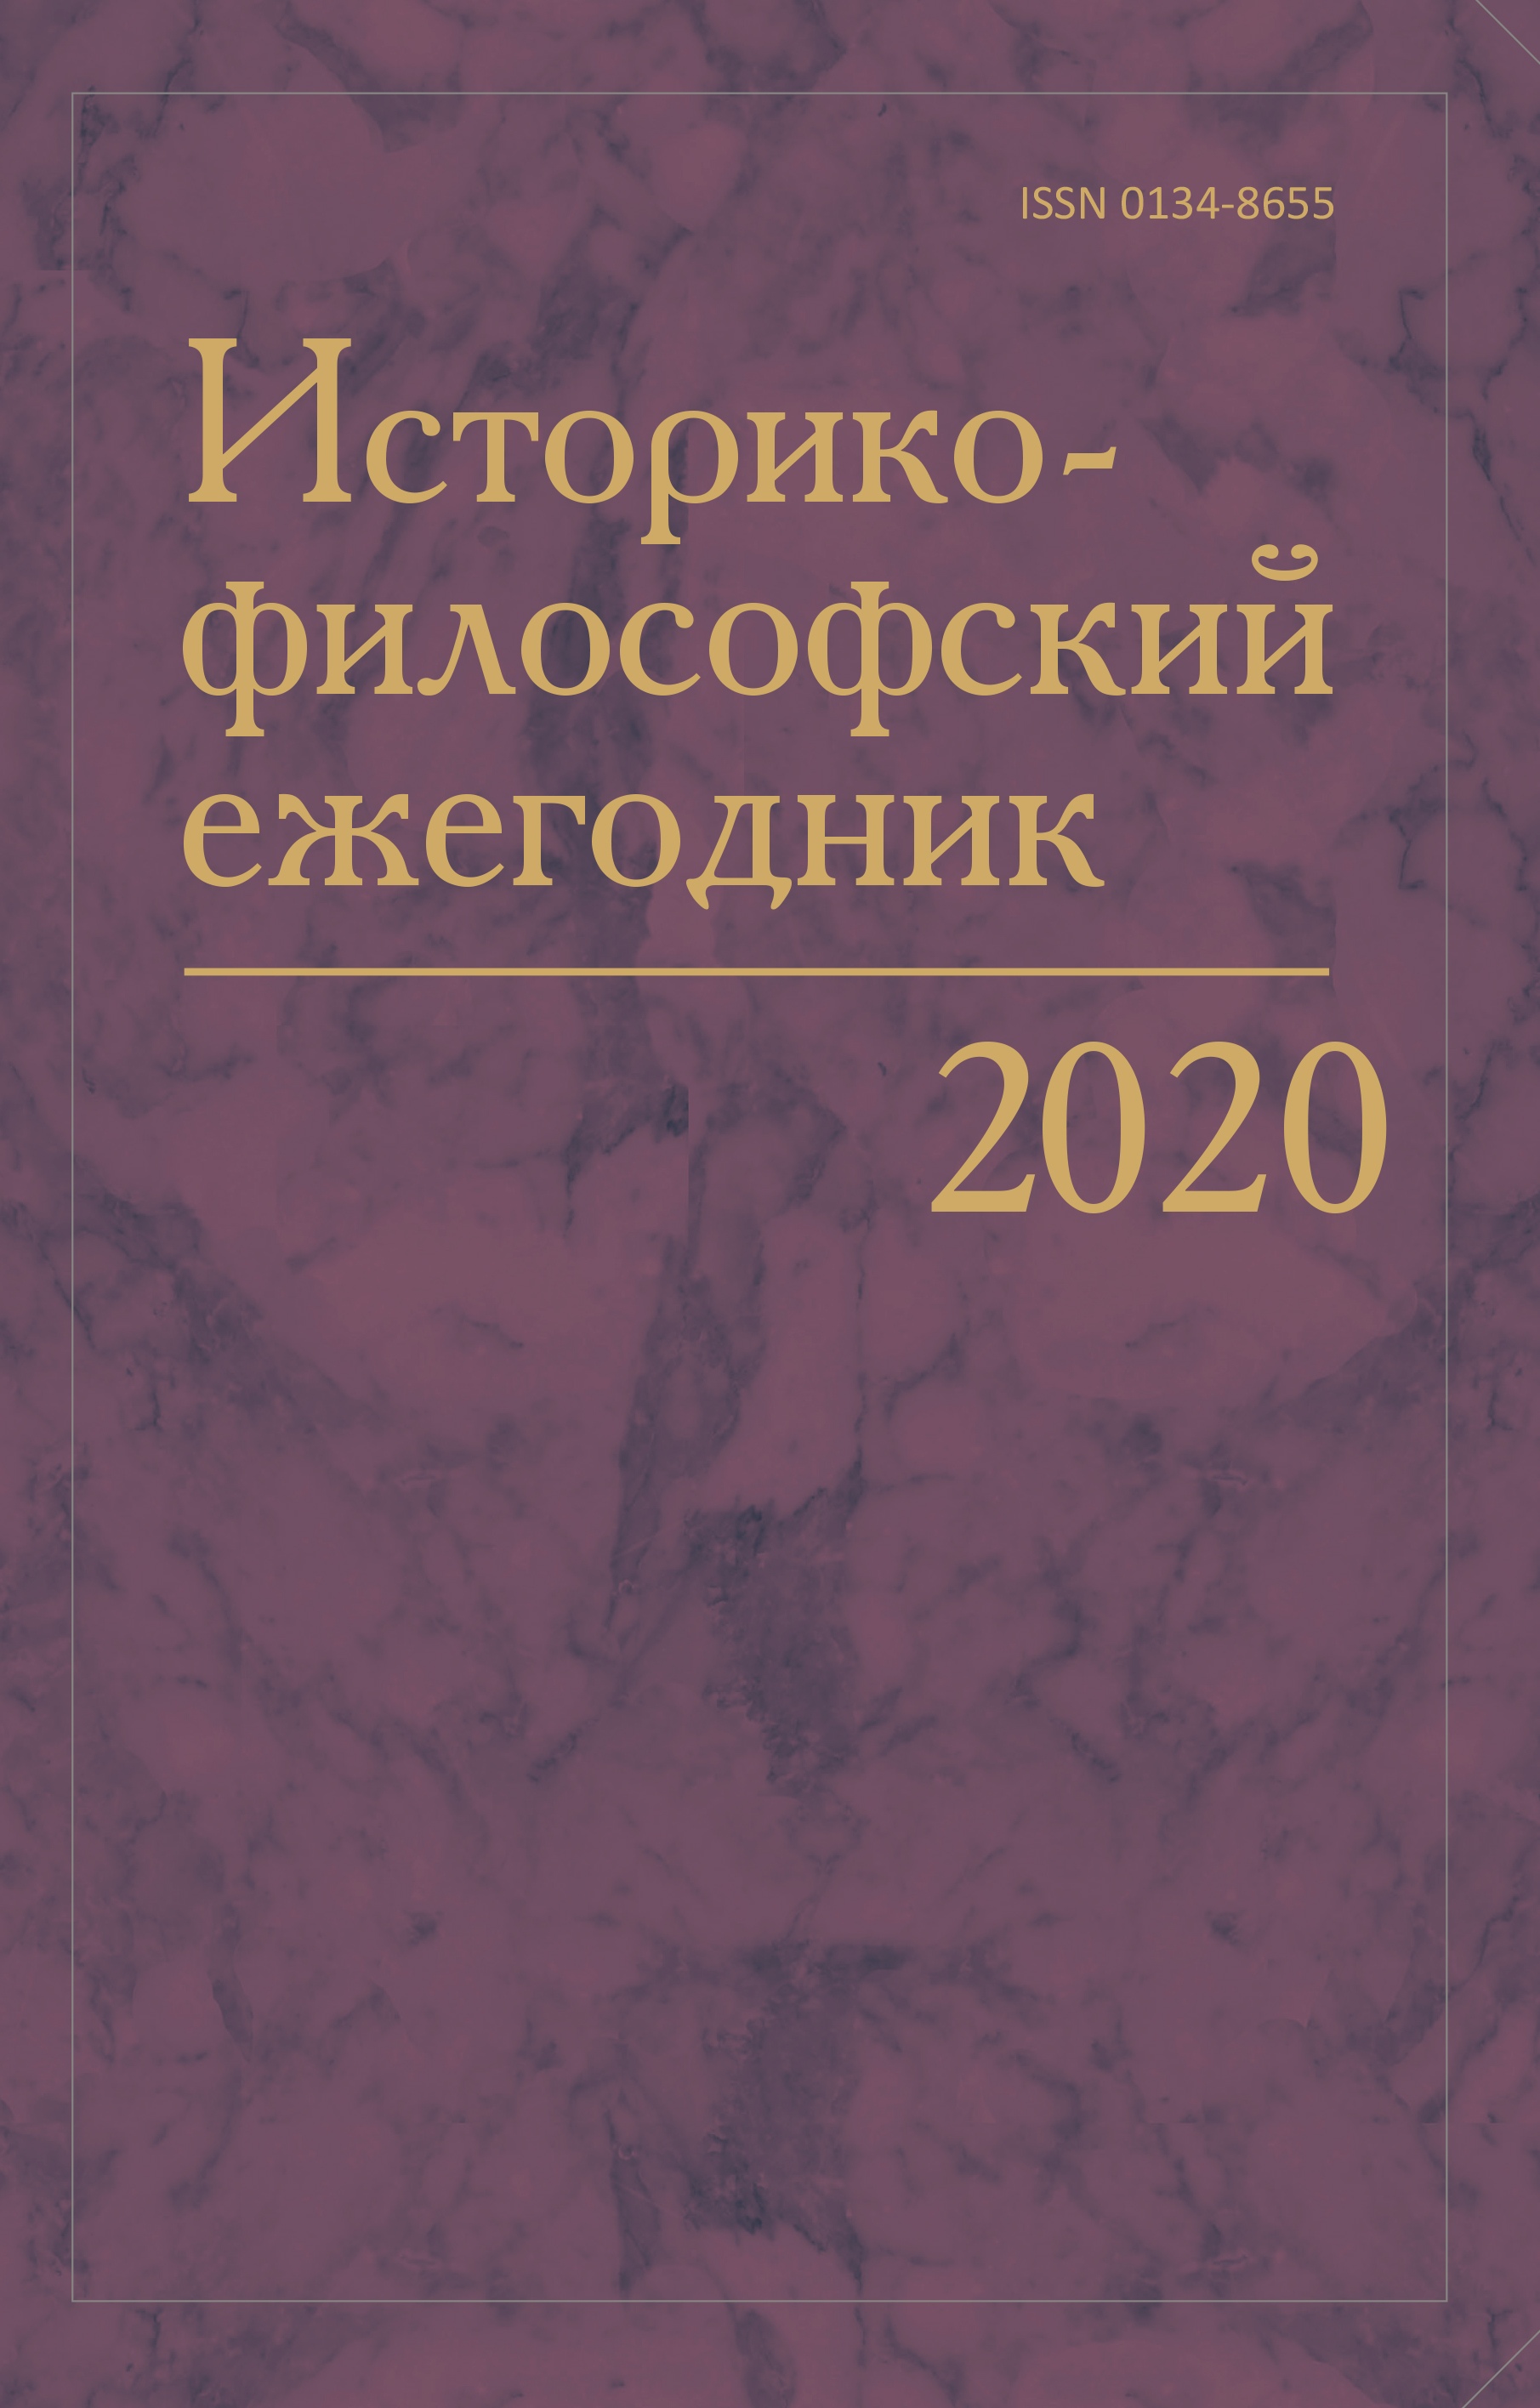 Историко-философский ежегодник. 2020. Т. 35